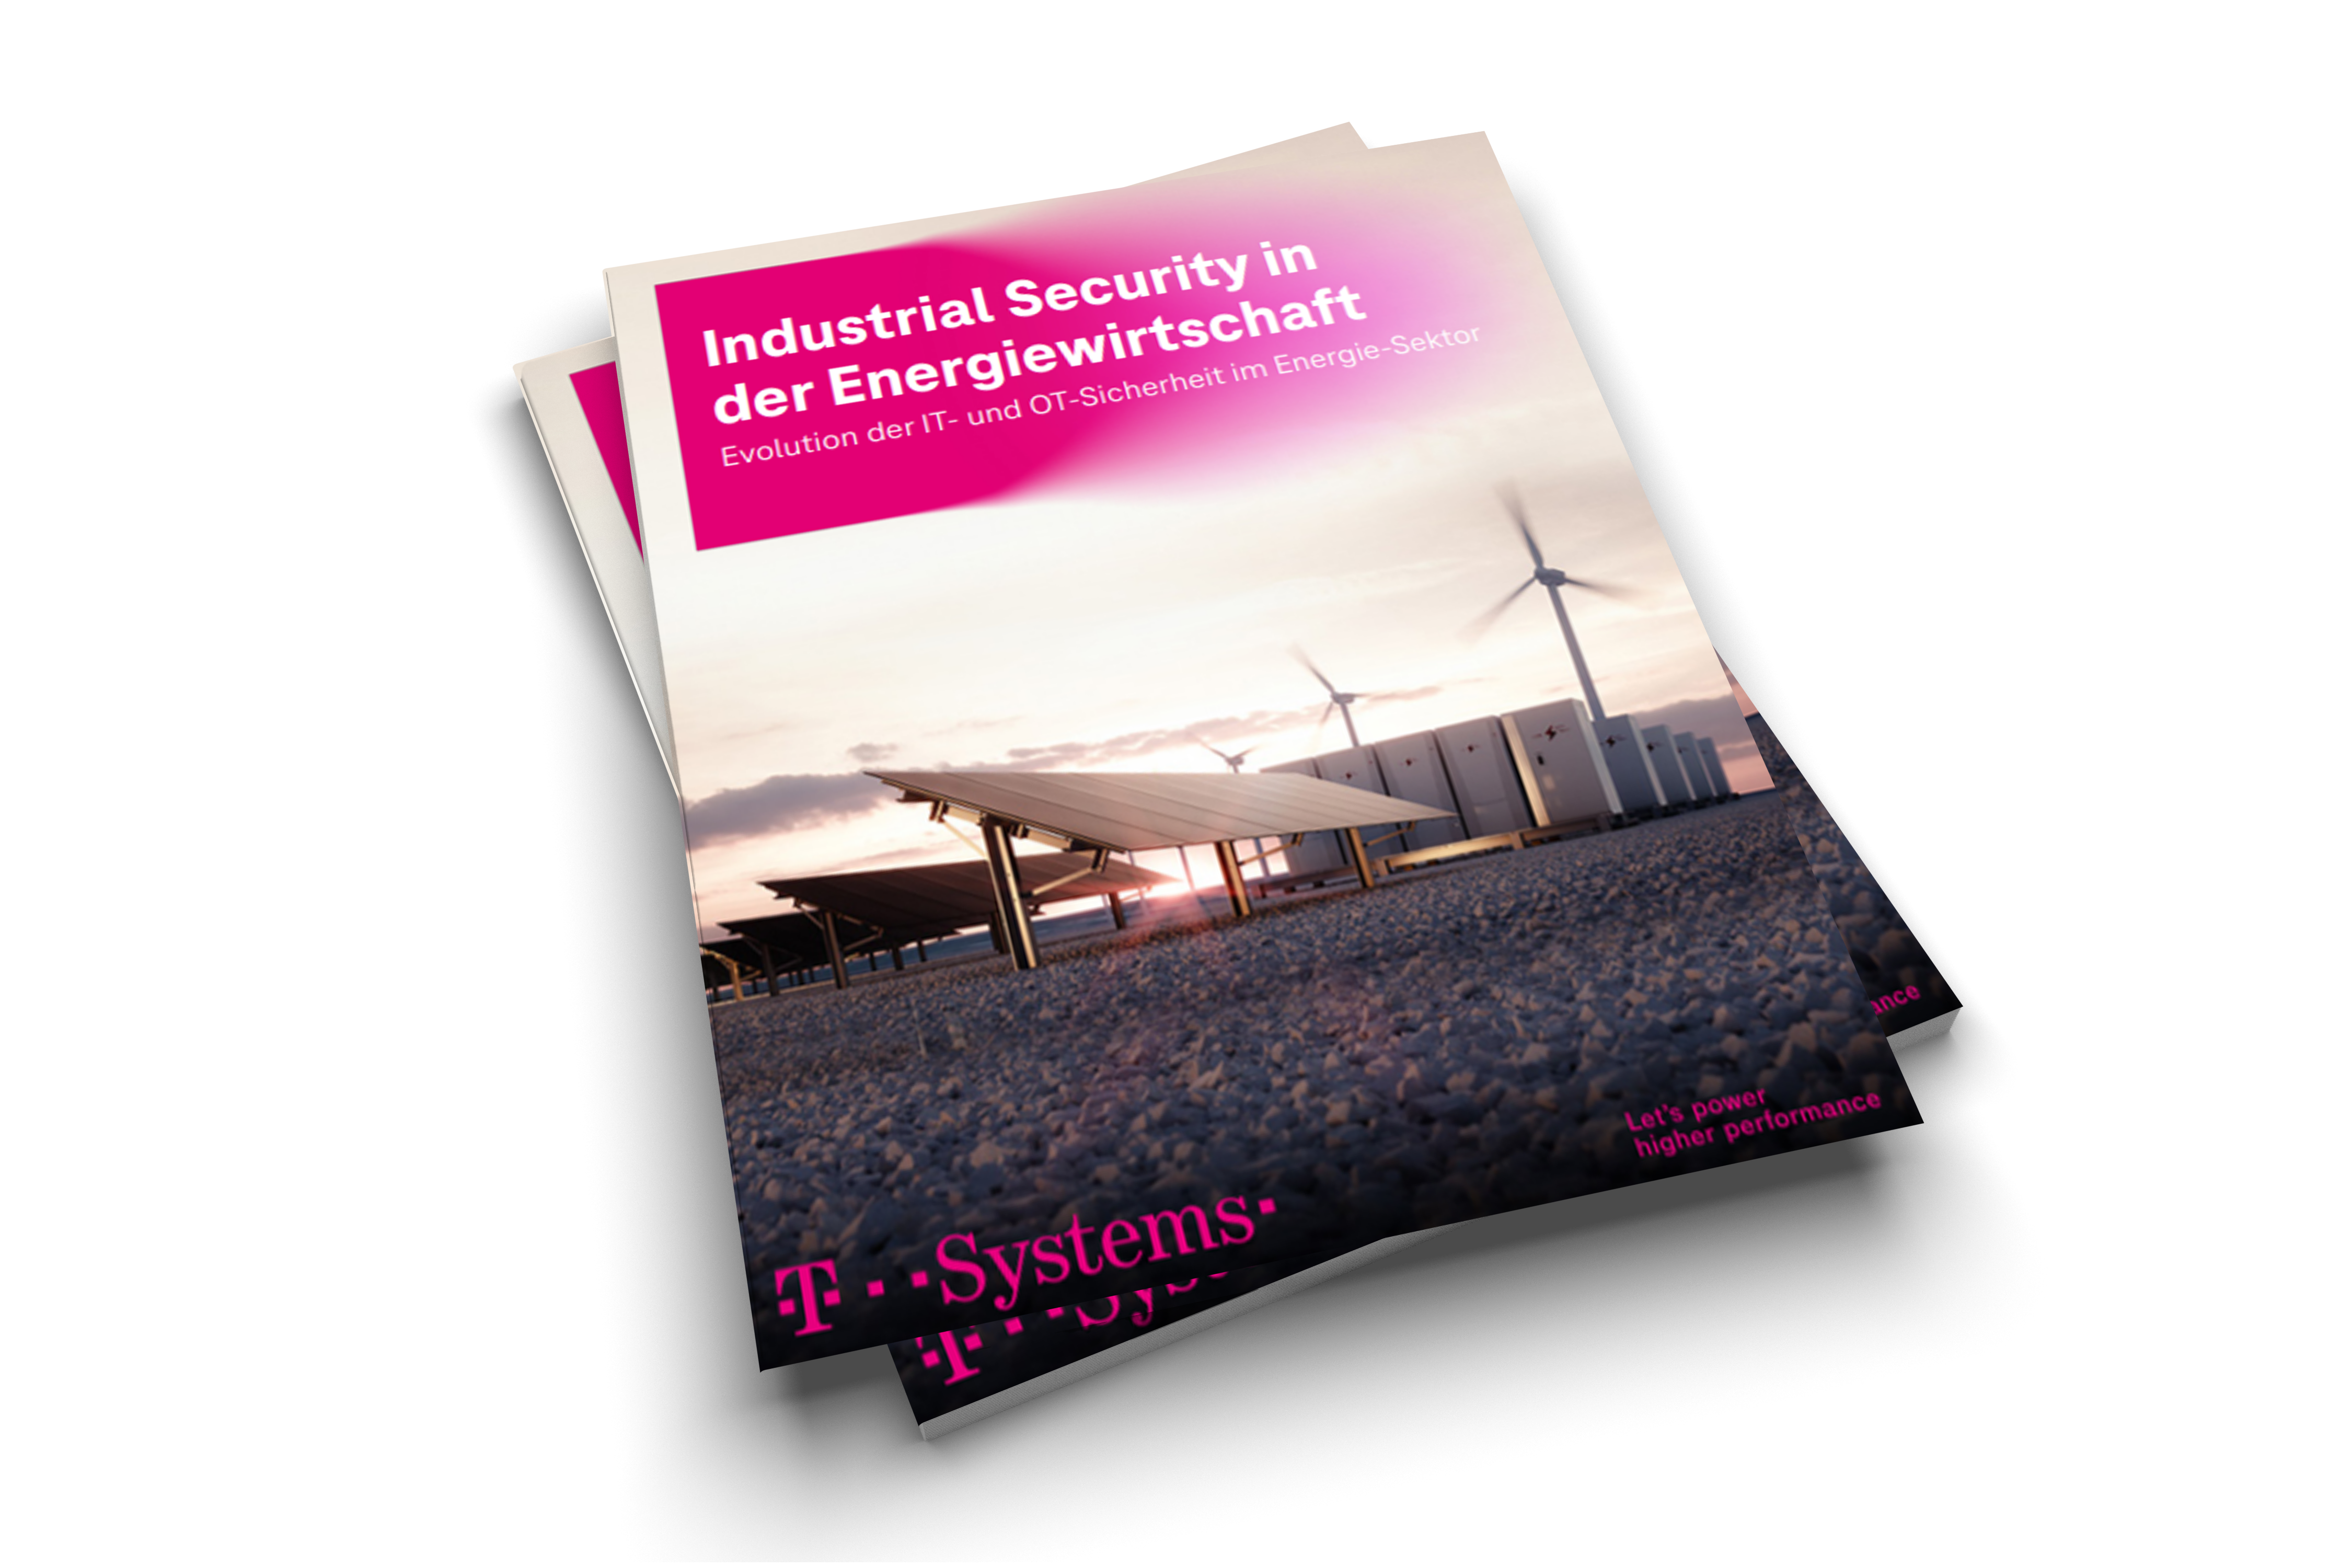 Industrial Security in der Energiewirtschaft